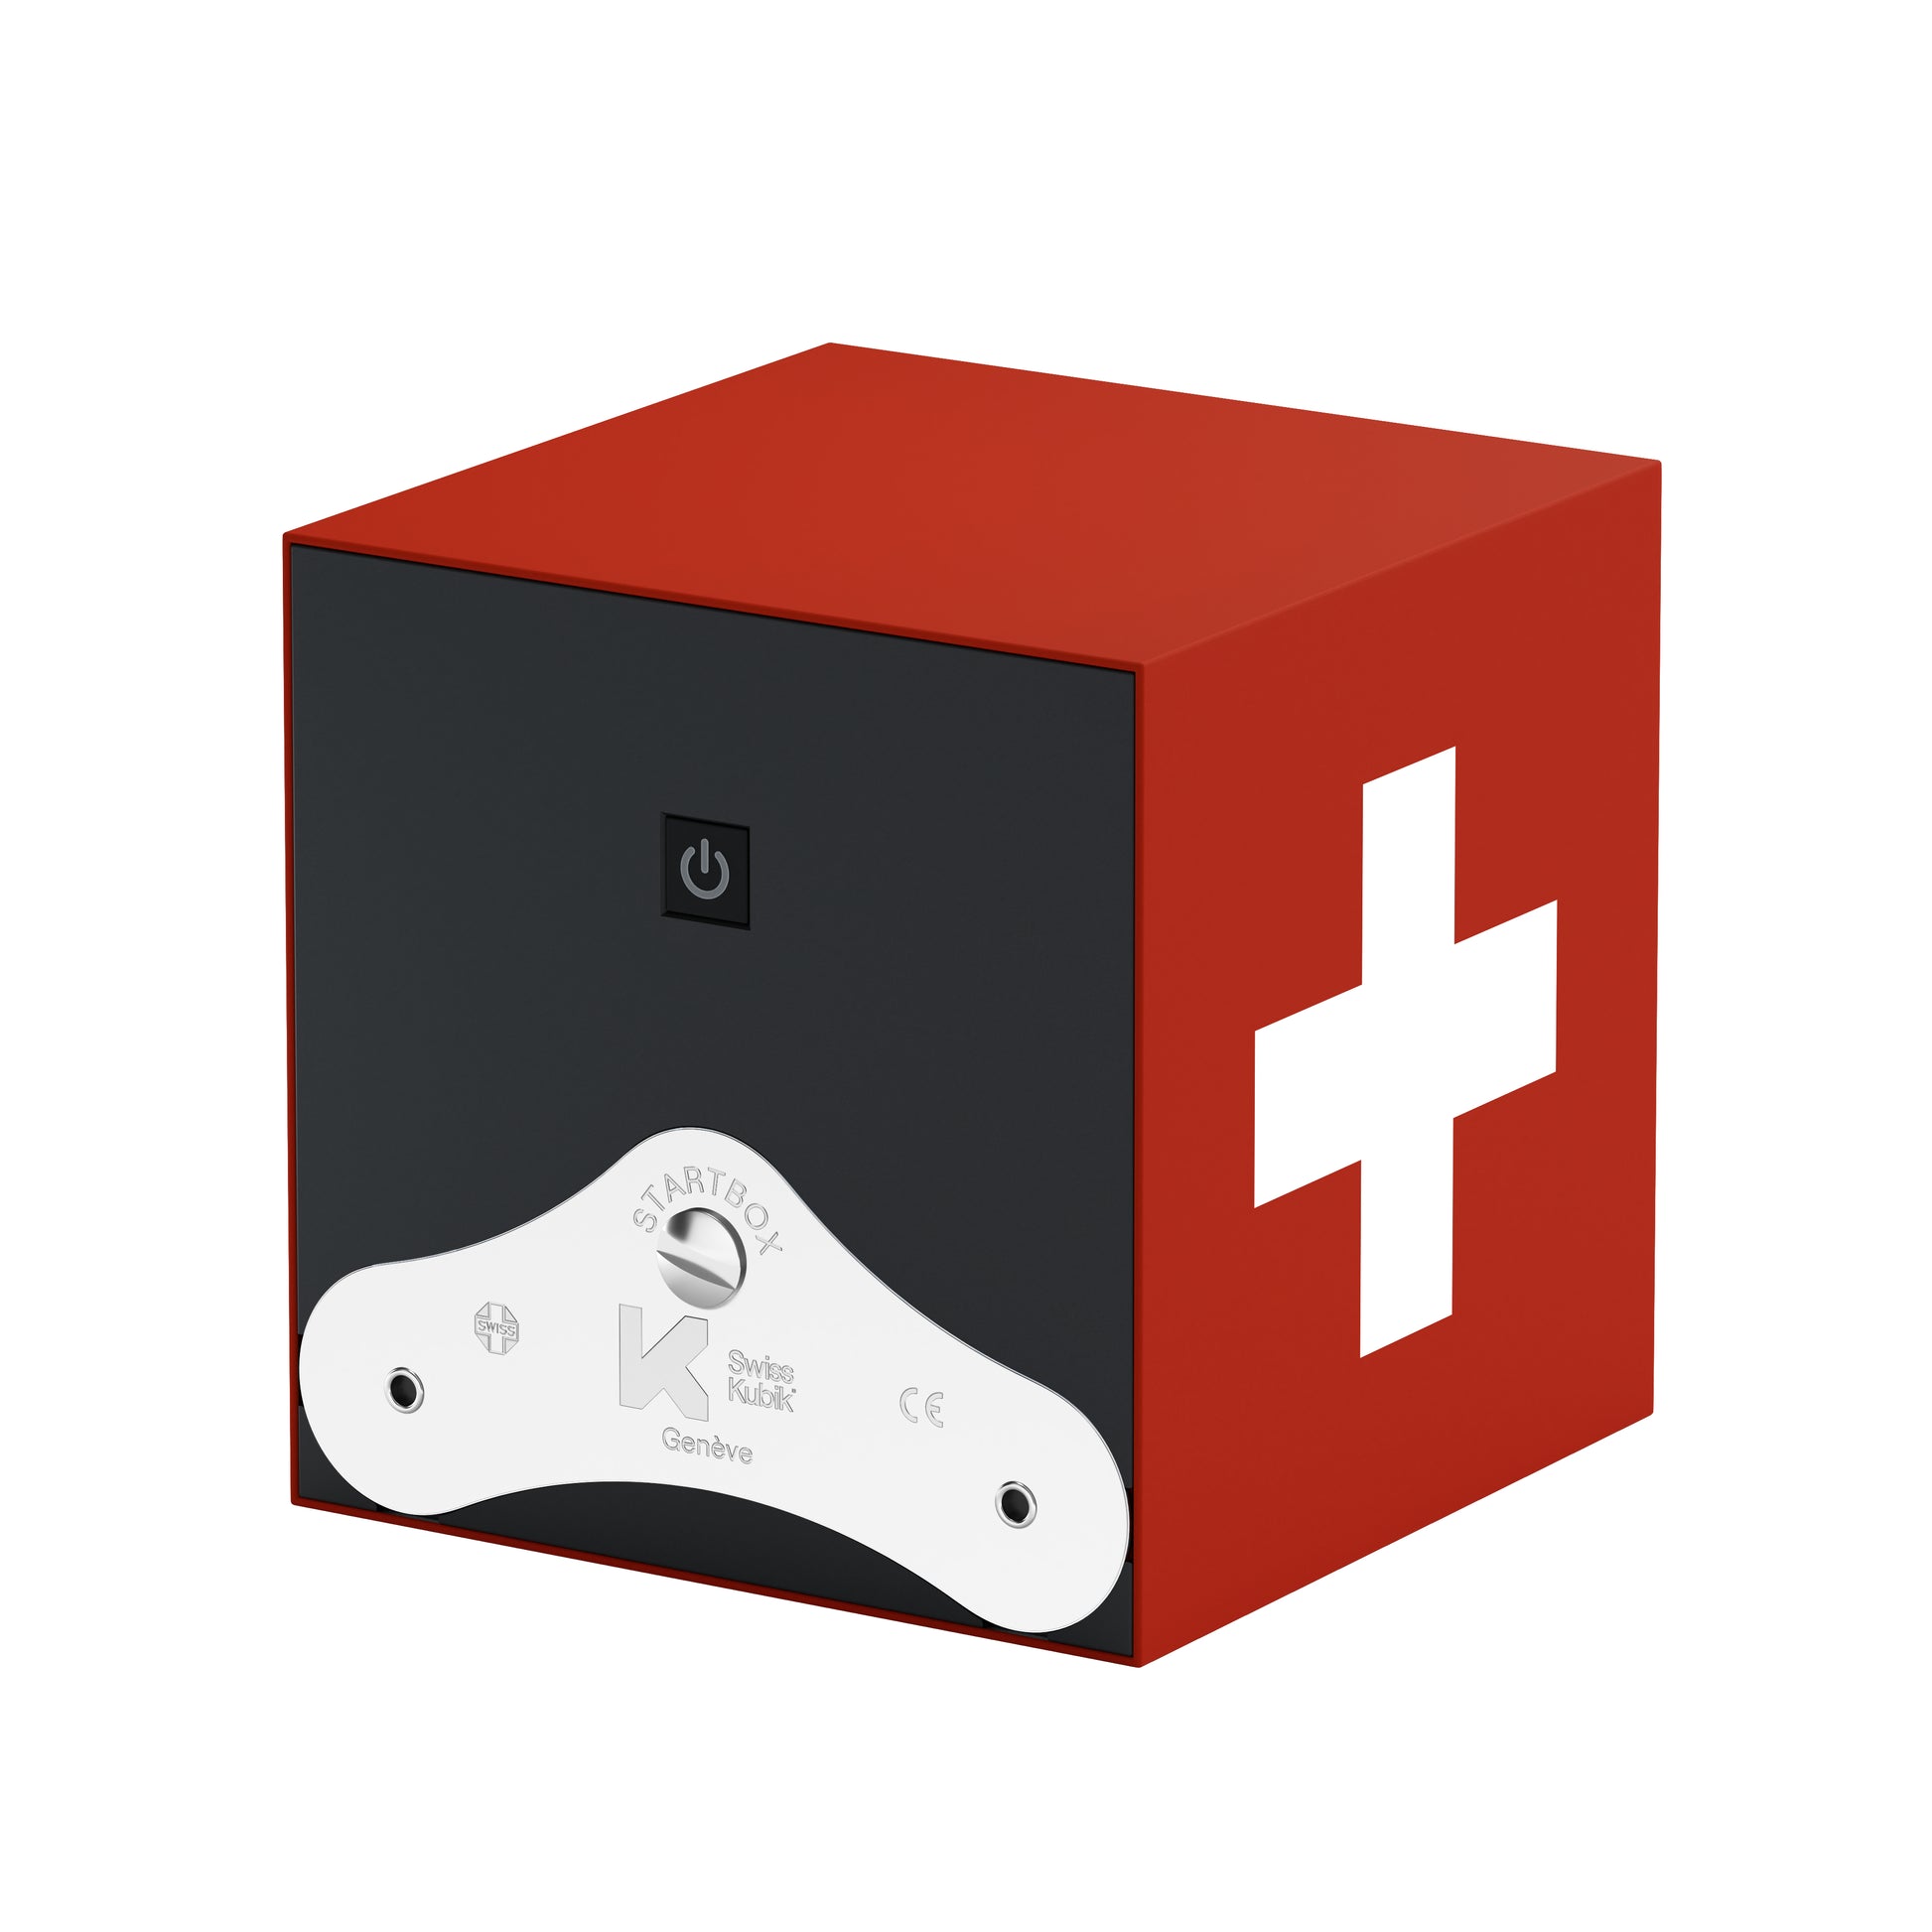 Startbox 1 montre Soft Touch Rouge : écrin rotatif pour montre automatique